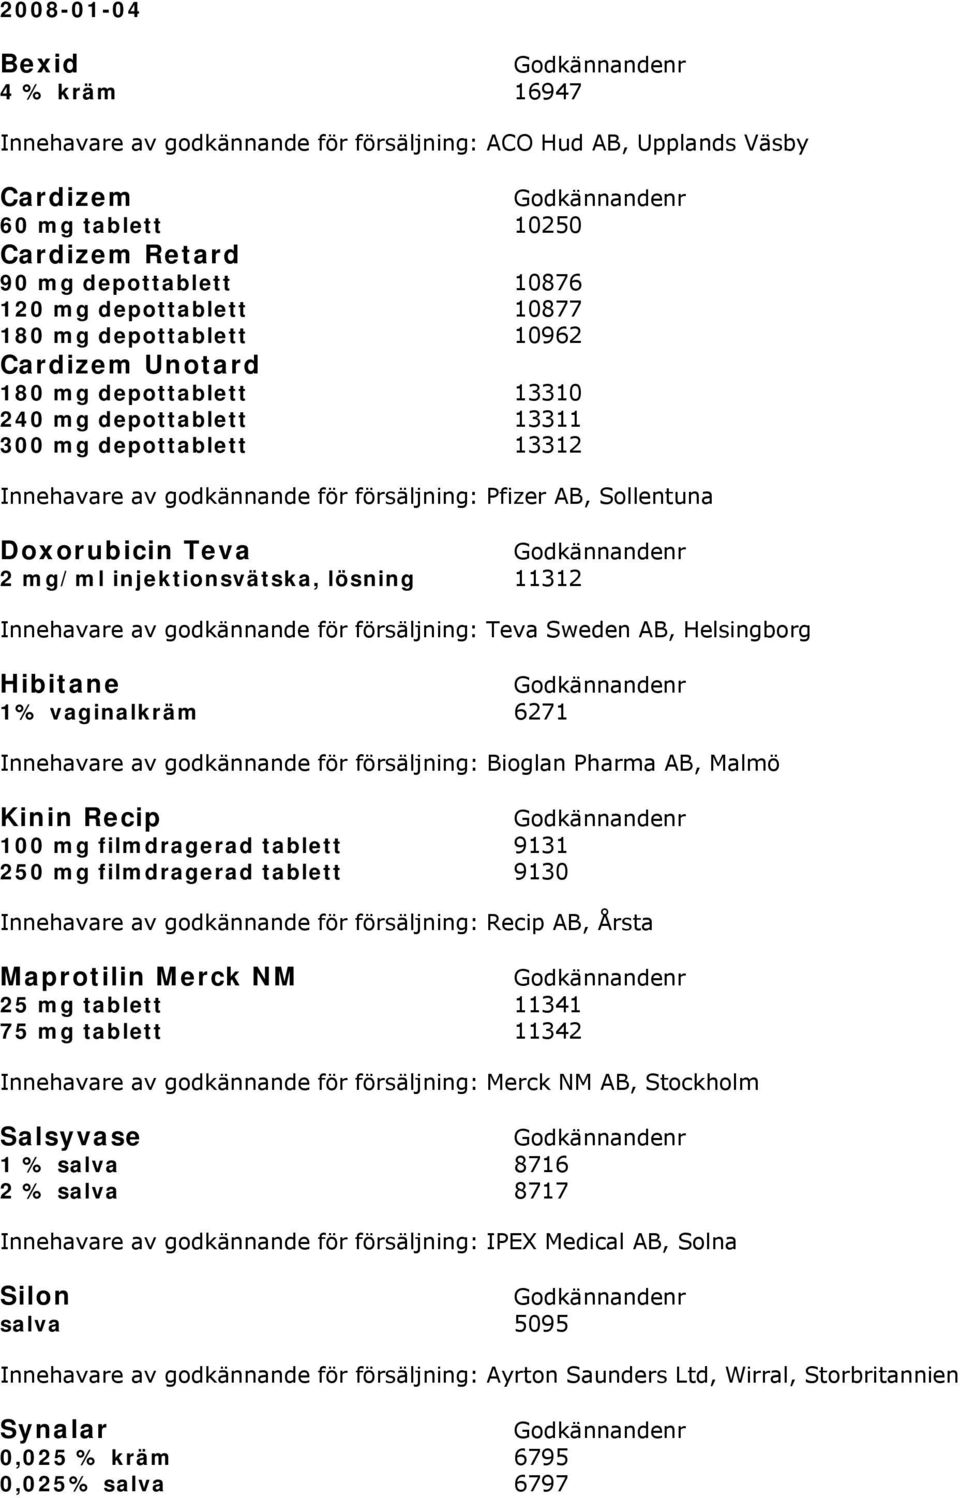 Teva 2 mg/ml injektionsvätska, lösning 11312 Innehavare av godkännande för försäljning: Teva Sweden AB, Helsingborg Hibitane 1% vaginalkräm 6271 Innehavare av godkännande för försäljning: Bioglan